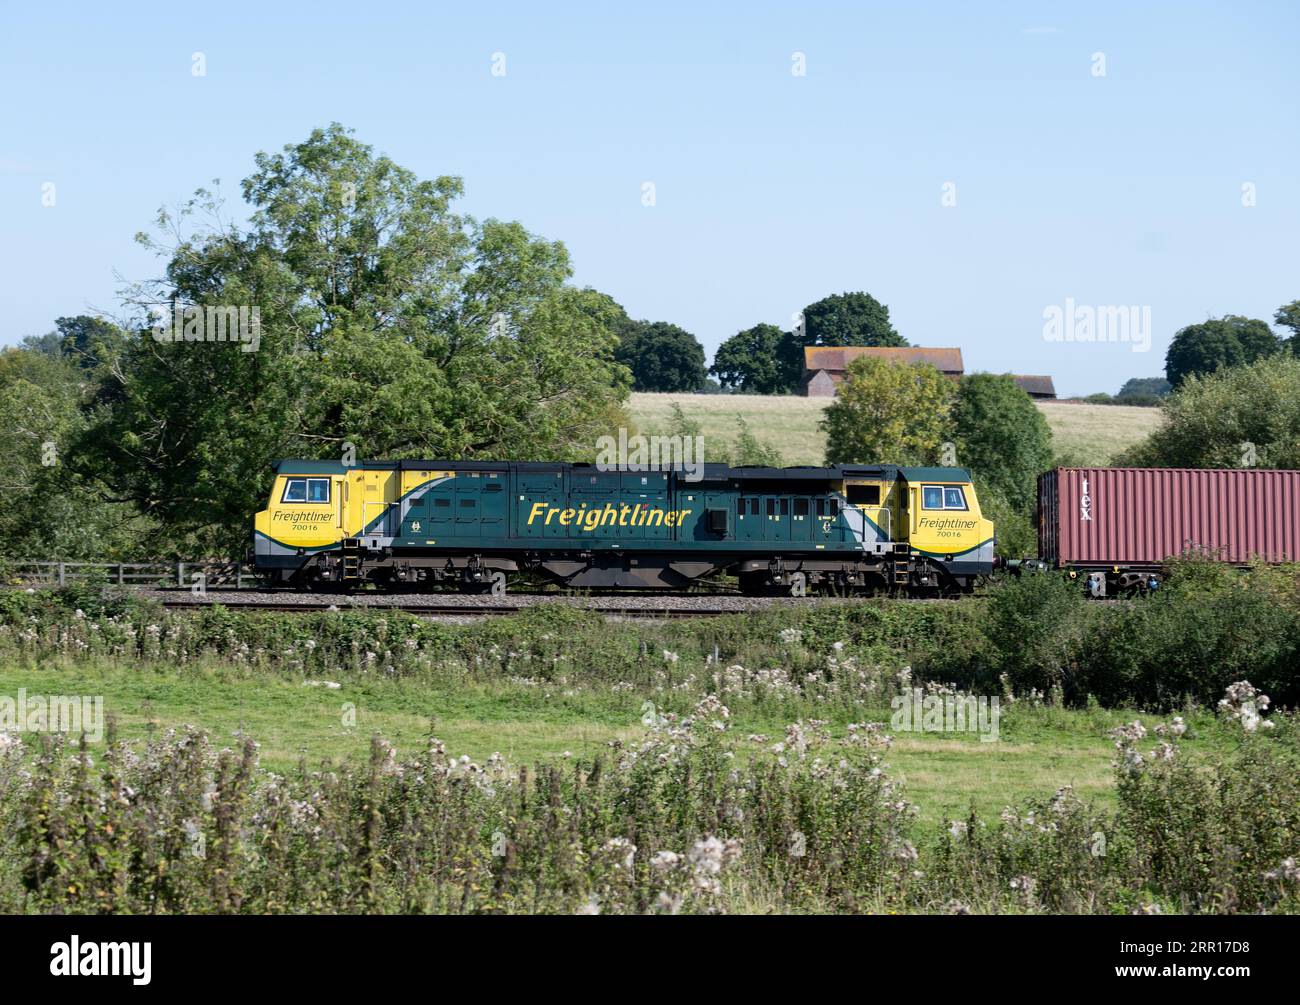 Diesellokomotive der Baureihe 70 Nr. 70016, die einen freightliner-Zug zieht, Warwickshire, England, Großbritannien Stockfoto